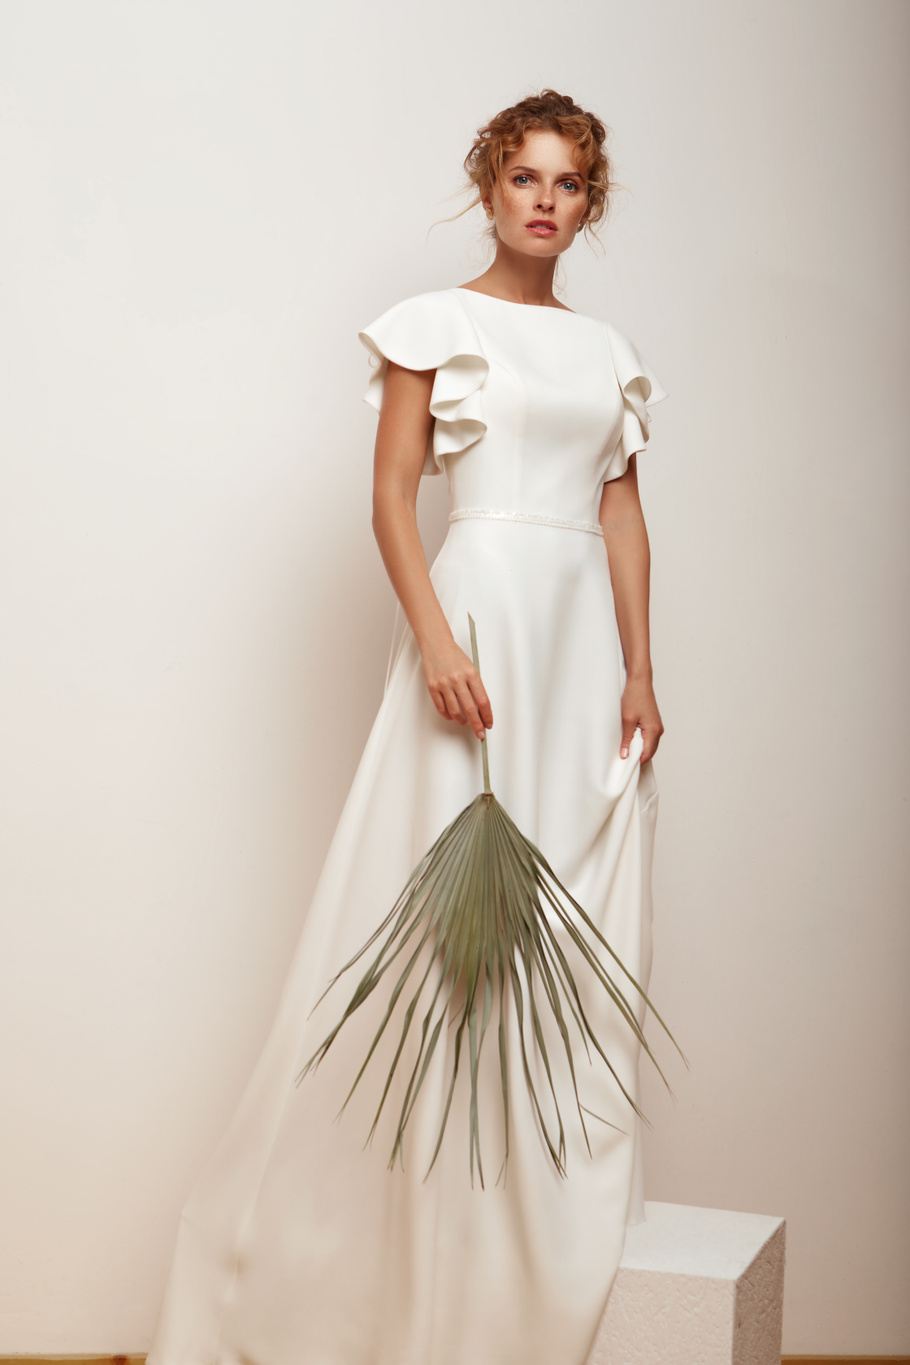 Купить свадебное платье «Ситлин» Мэрри Марк из коллекции 2020 года в Екатеринбурге